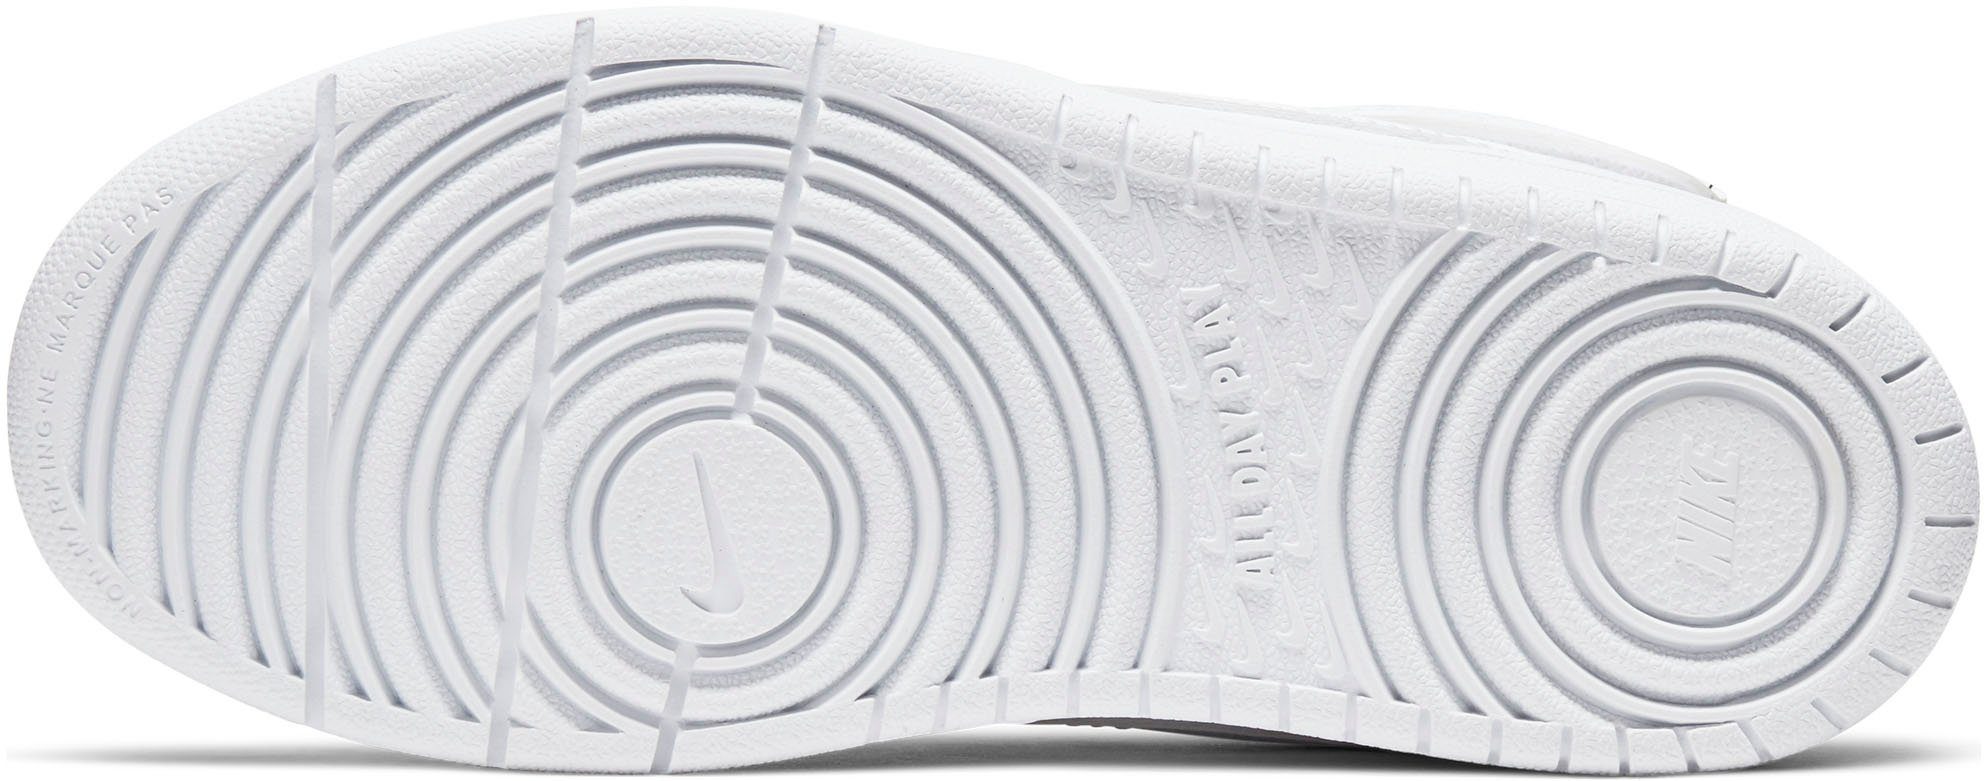 Nike Sportswear COURT auf MID Air 1 Force Sneaker Design BOROUGH des den 2 Spuren